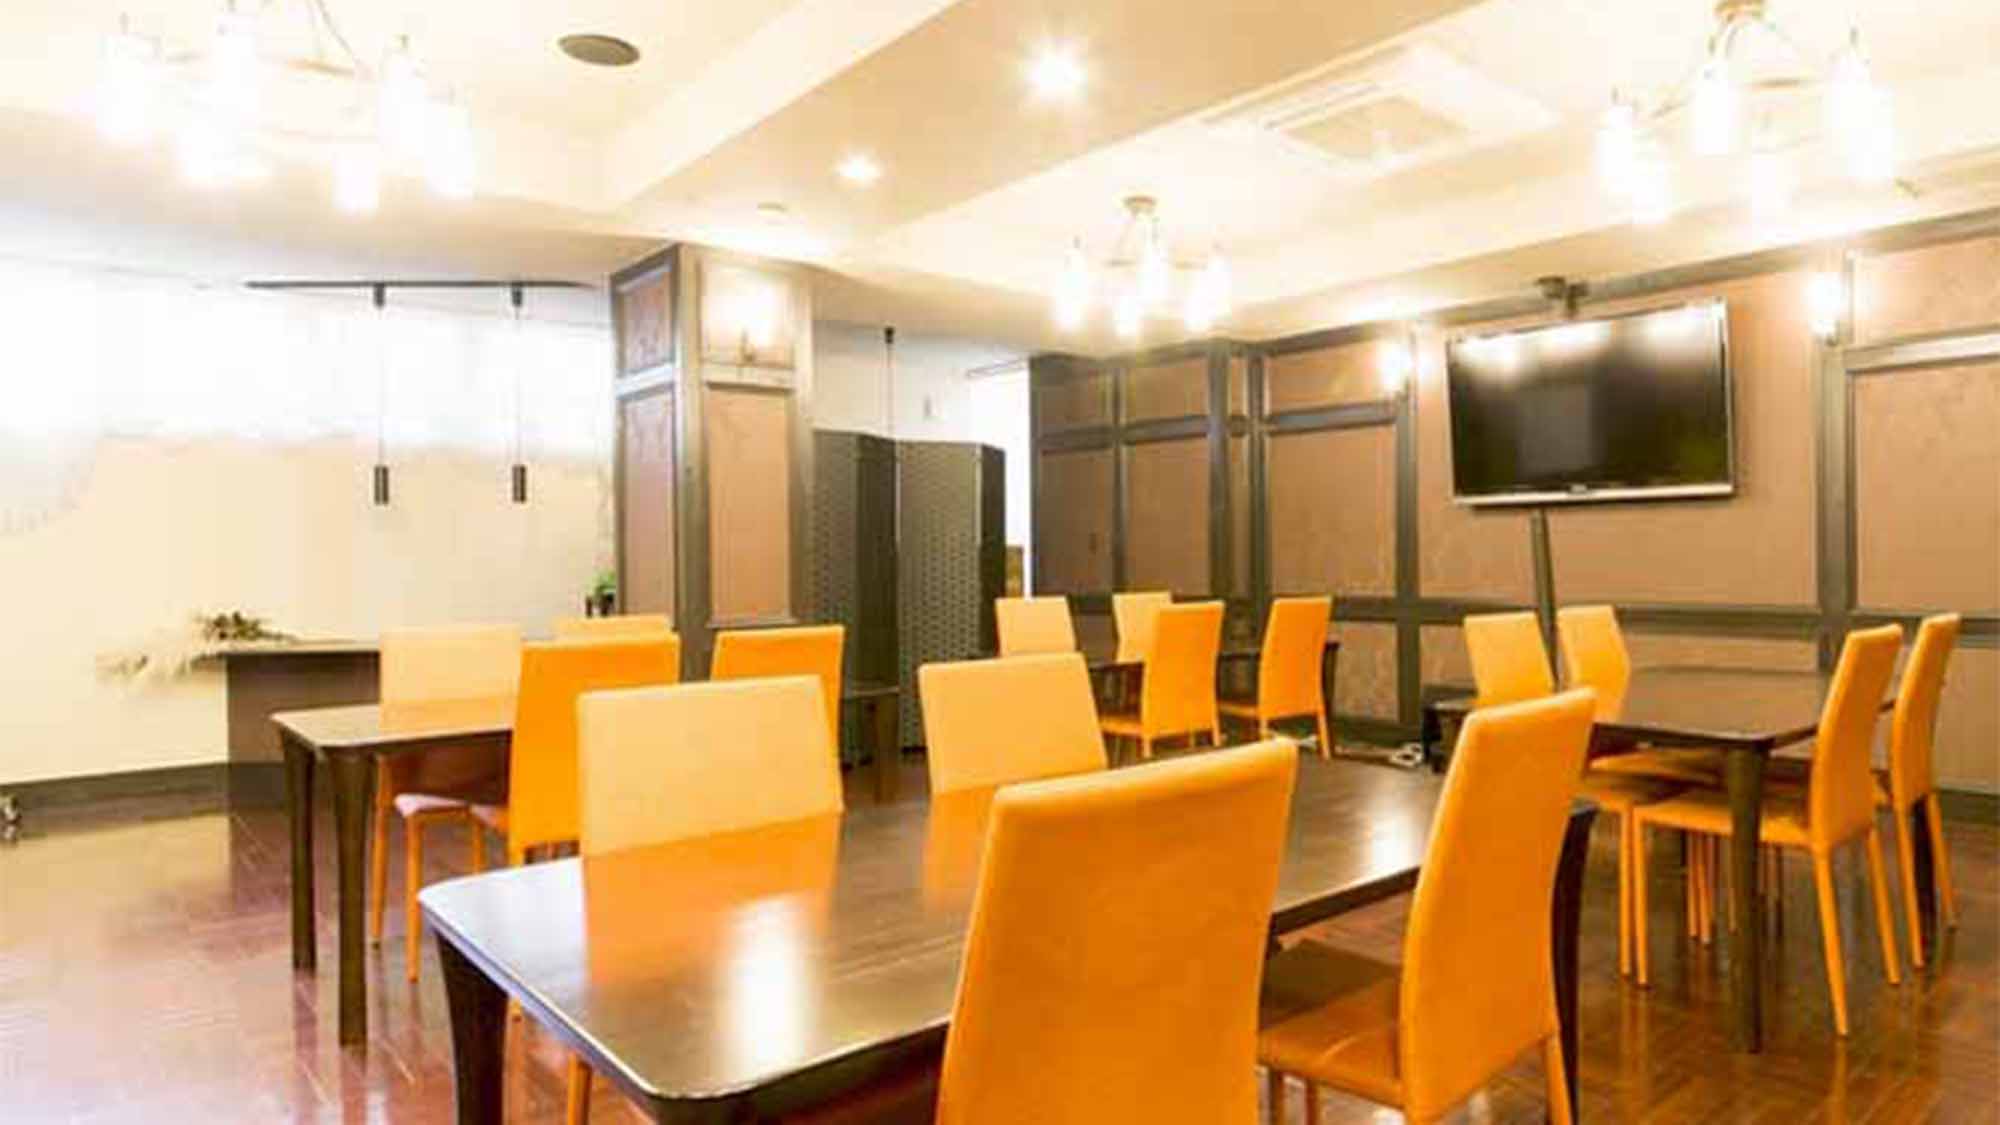 ・お食事場所や会議室としてもご利用できる広い空間